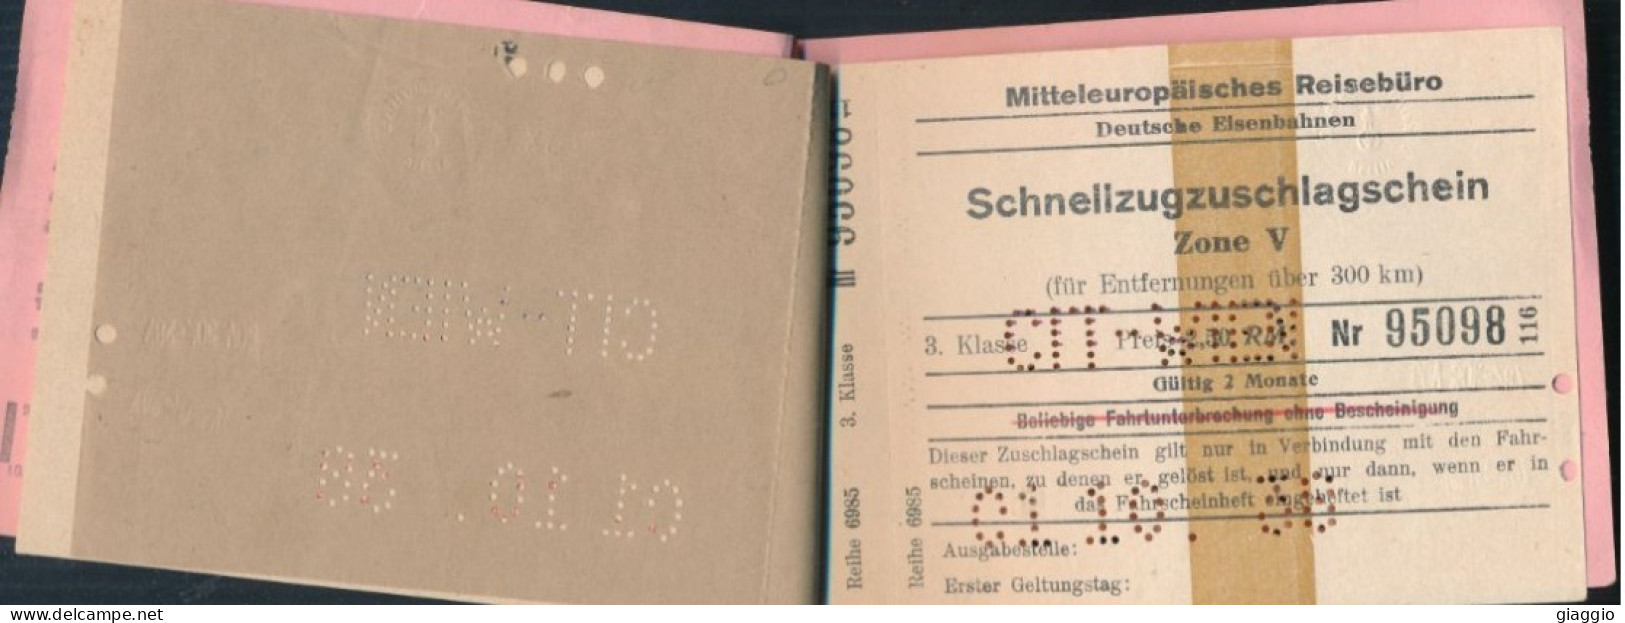 °°° Grenzbescheinigung + Mitteleuropaisches Reiseburo - Fahrkarte Wien/San Candido + Schnellzugzuschlagschein - 1938 °°° - Europa